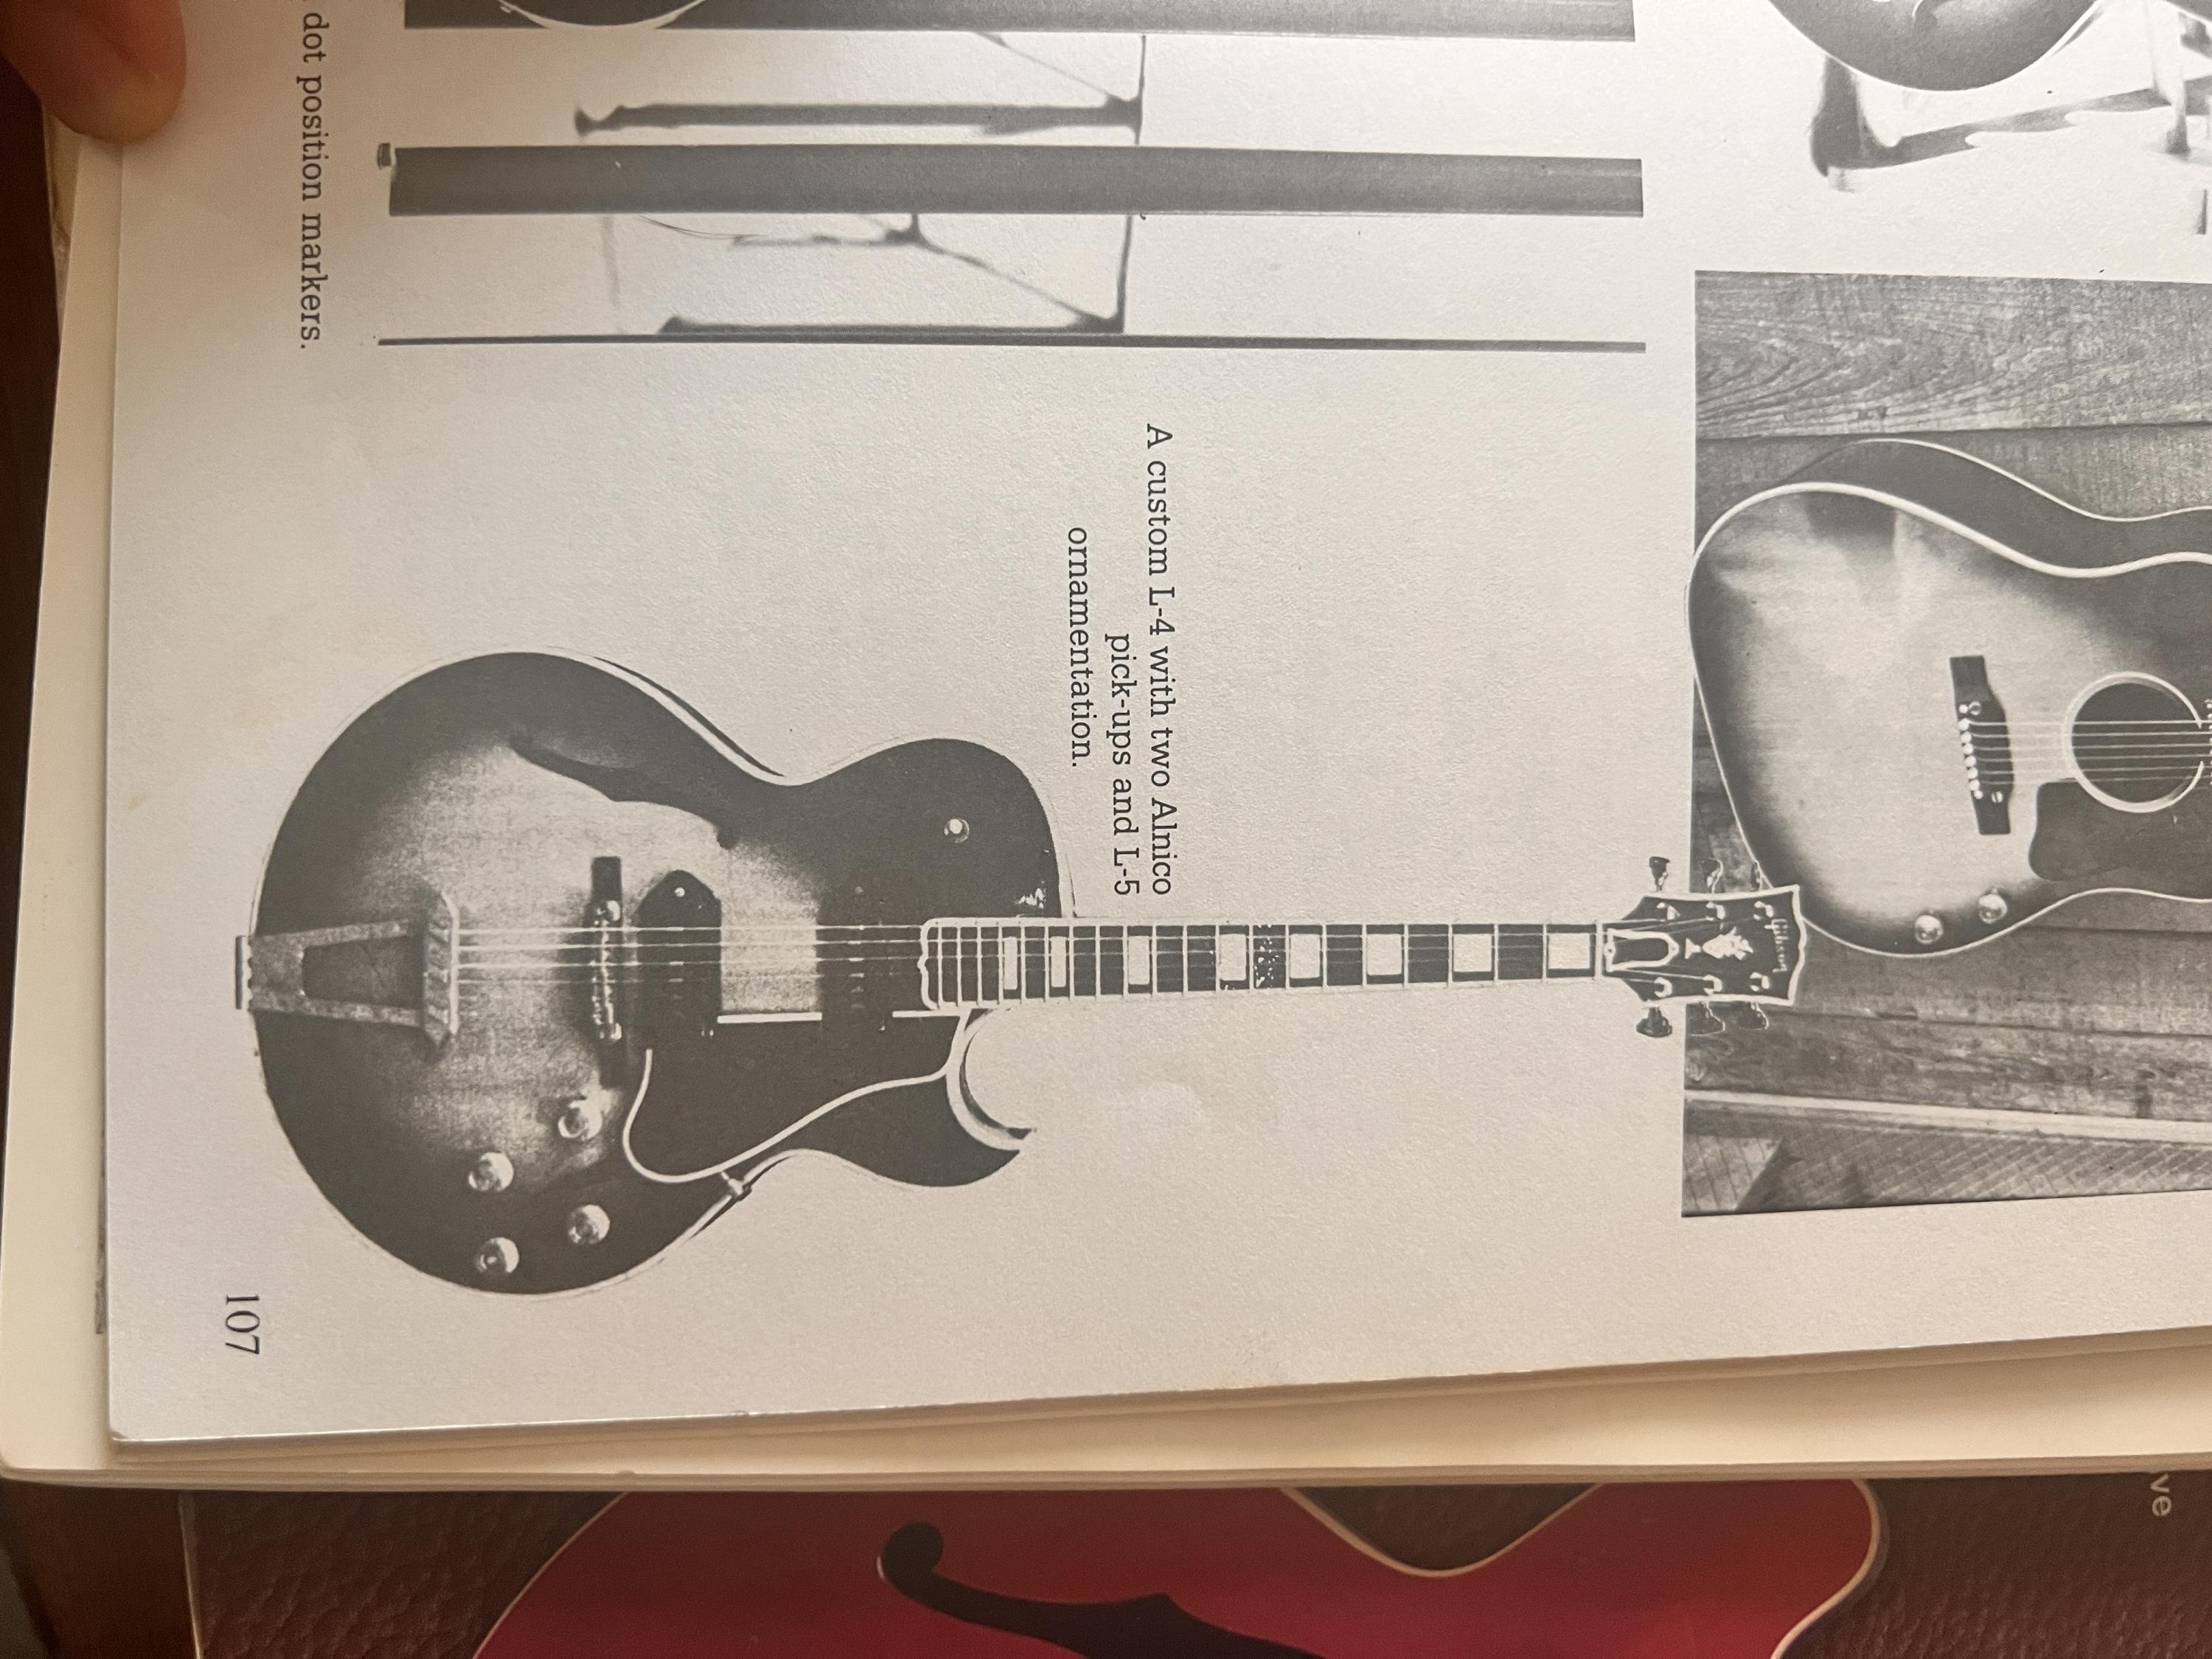 Sacha’s guitar, as played by Pele?-f095517c-d3dc-4f4f-b74f-6afedc527c99-jpg